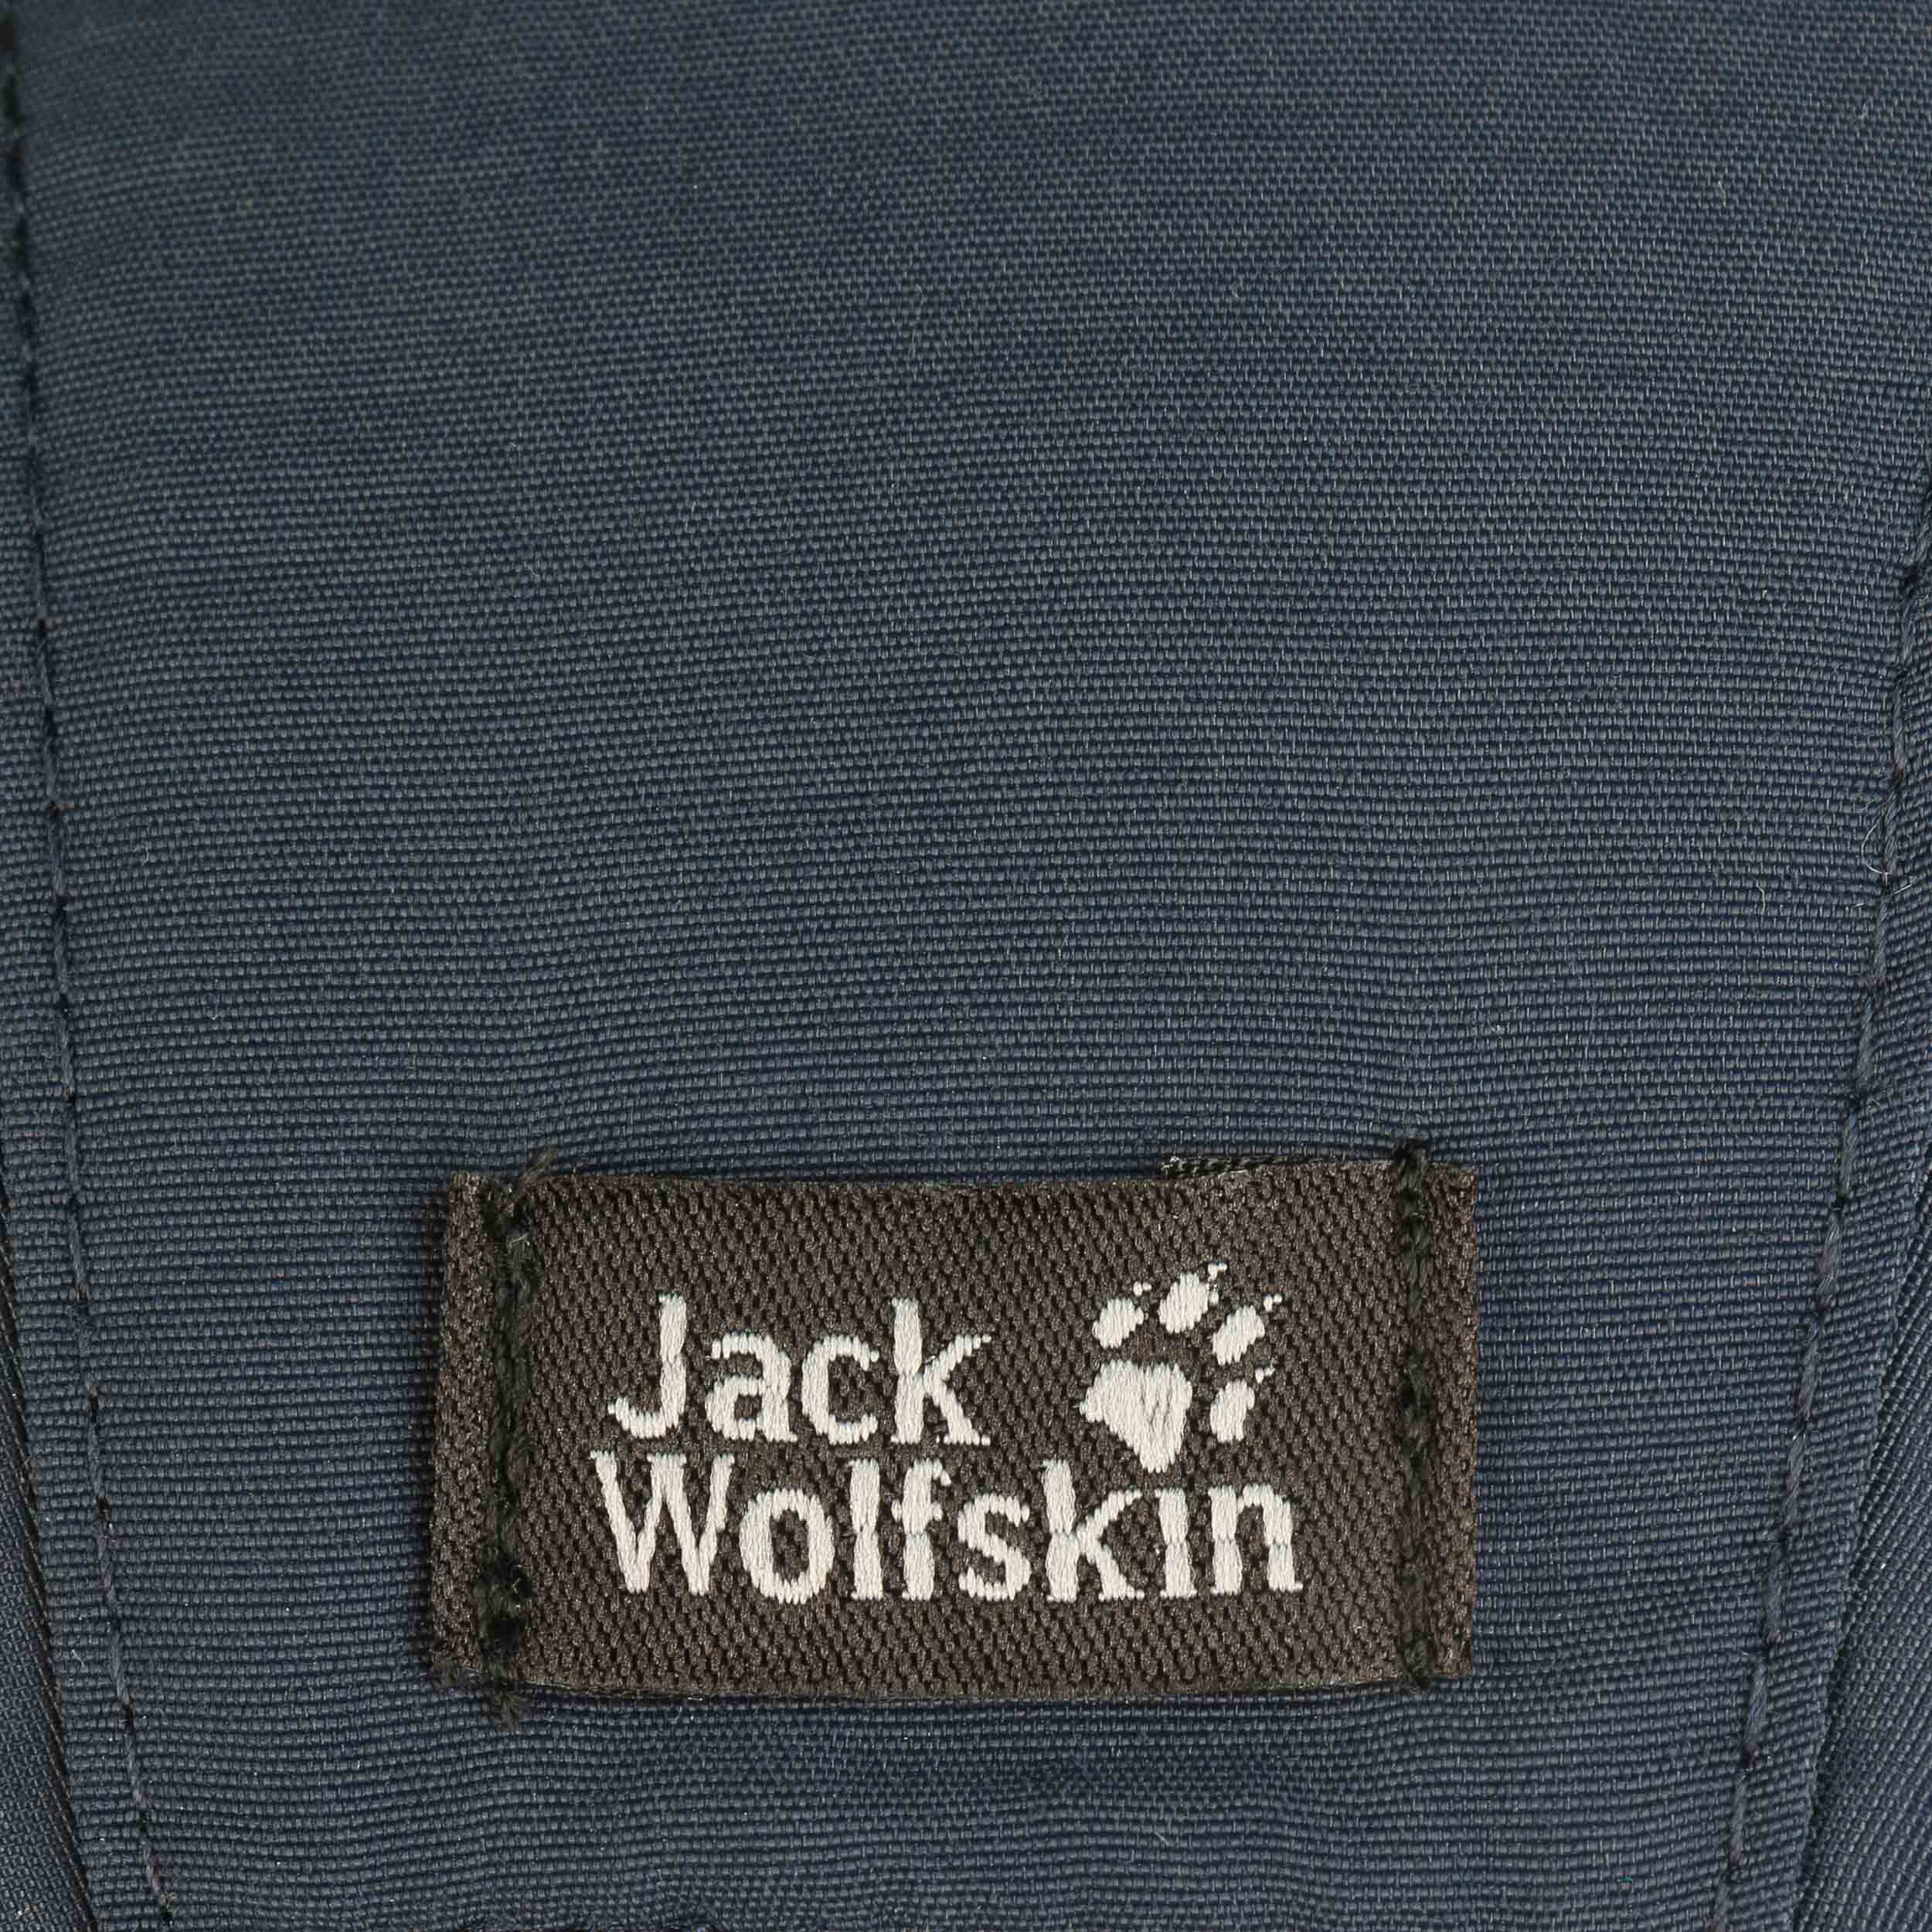 Wolfskin Cap Vent Supplex Pro € - by Jack 32,95